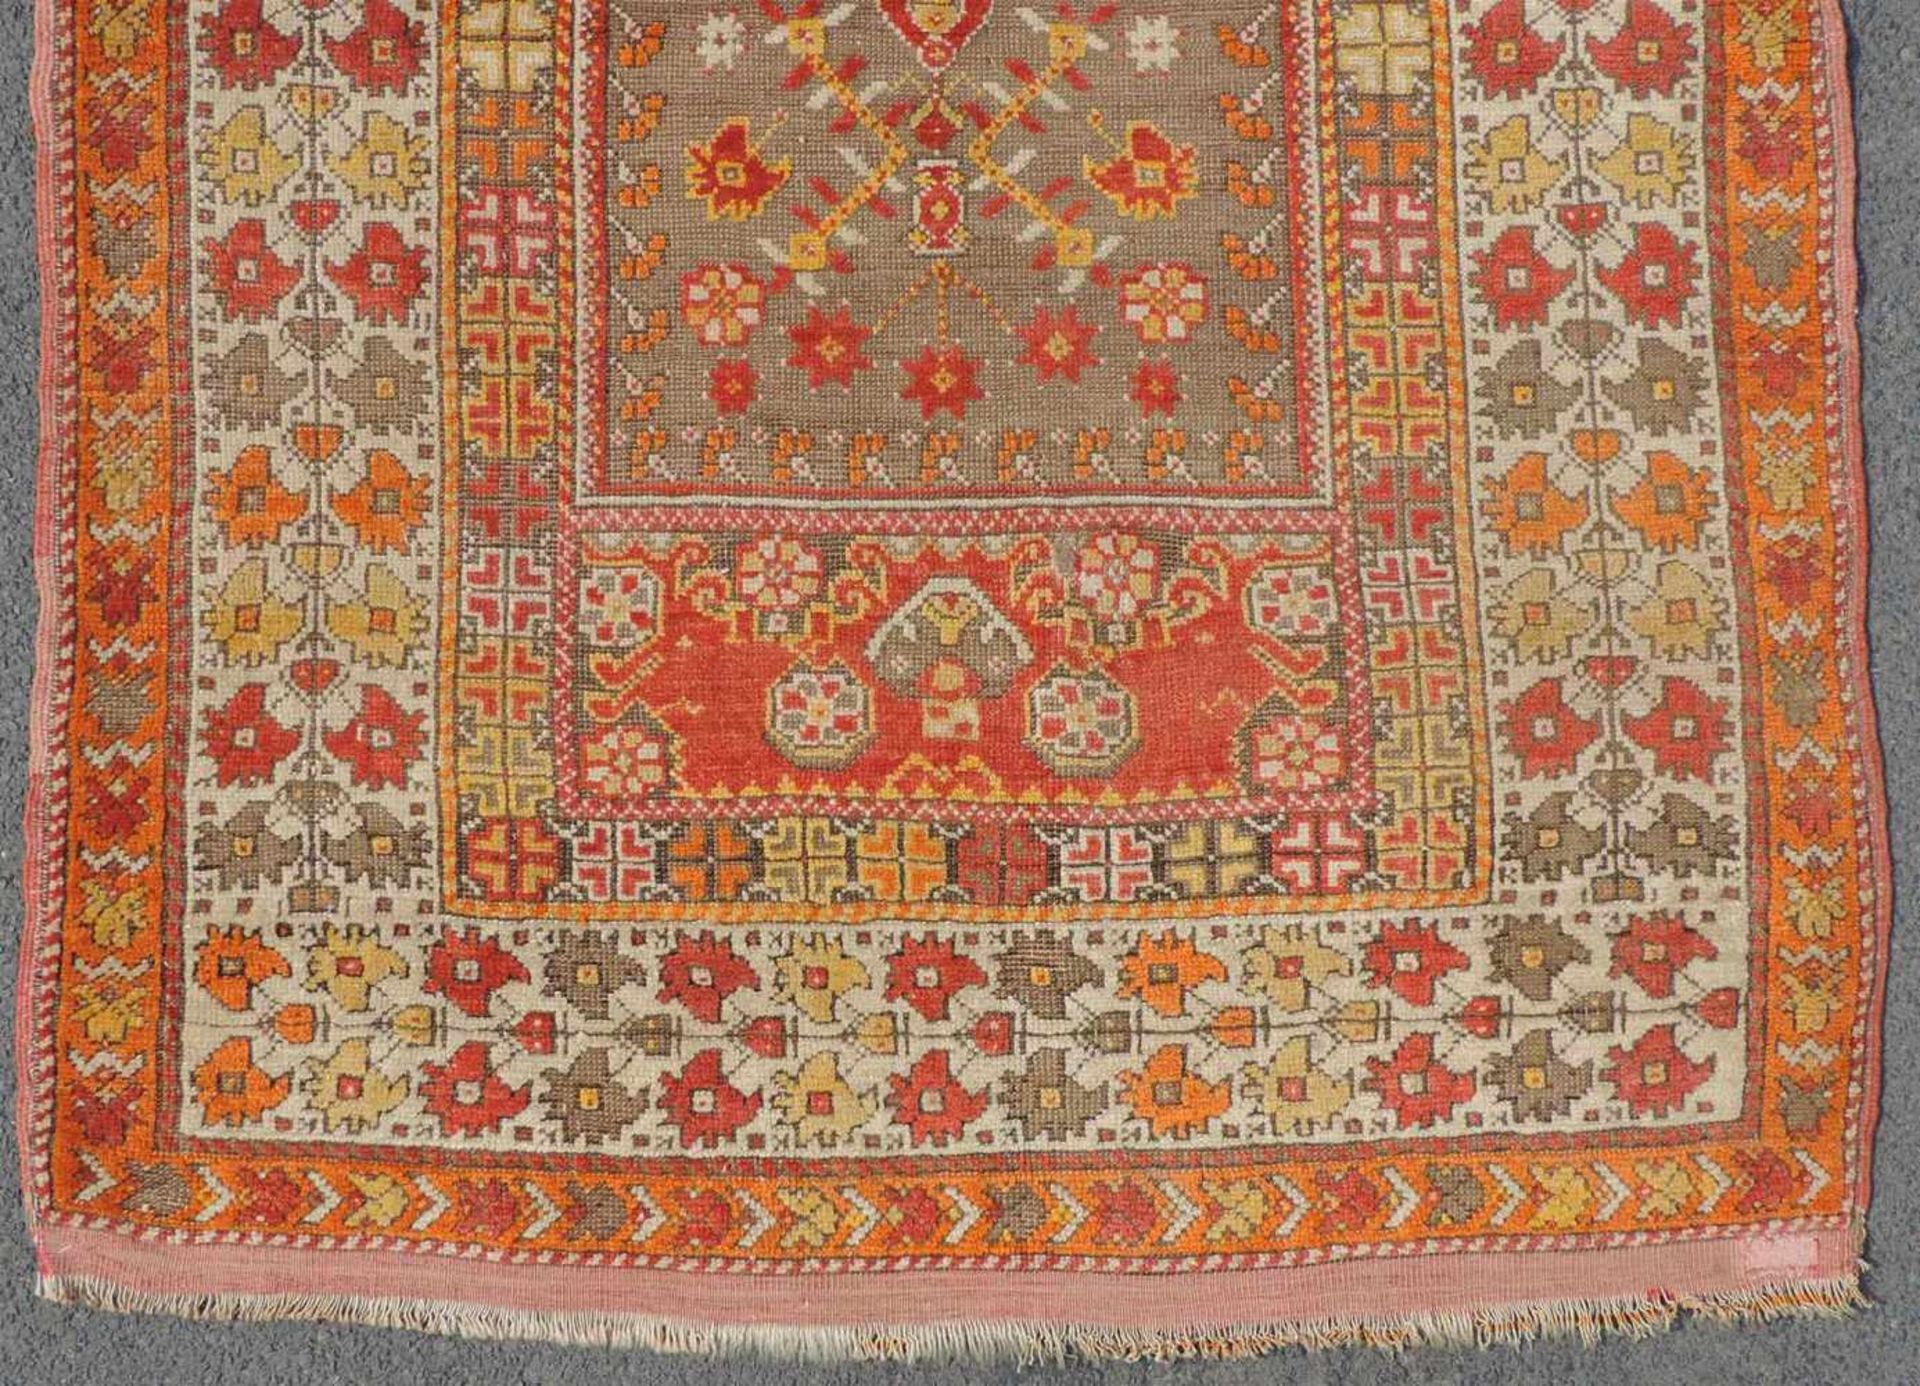 Mucur Gebetsteppich. Anatolien. Türkei. Antik, um 1870. 155 cm x 114 cm. Handgeknüpft. Wolle auf - Bild 2 aus 6